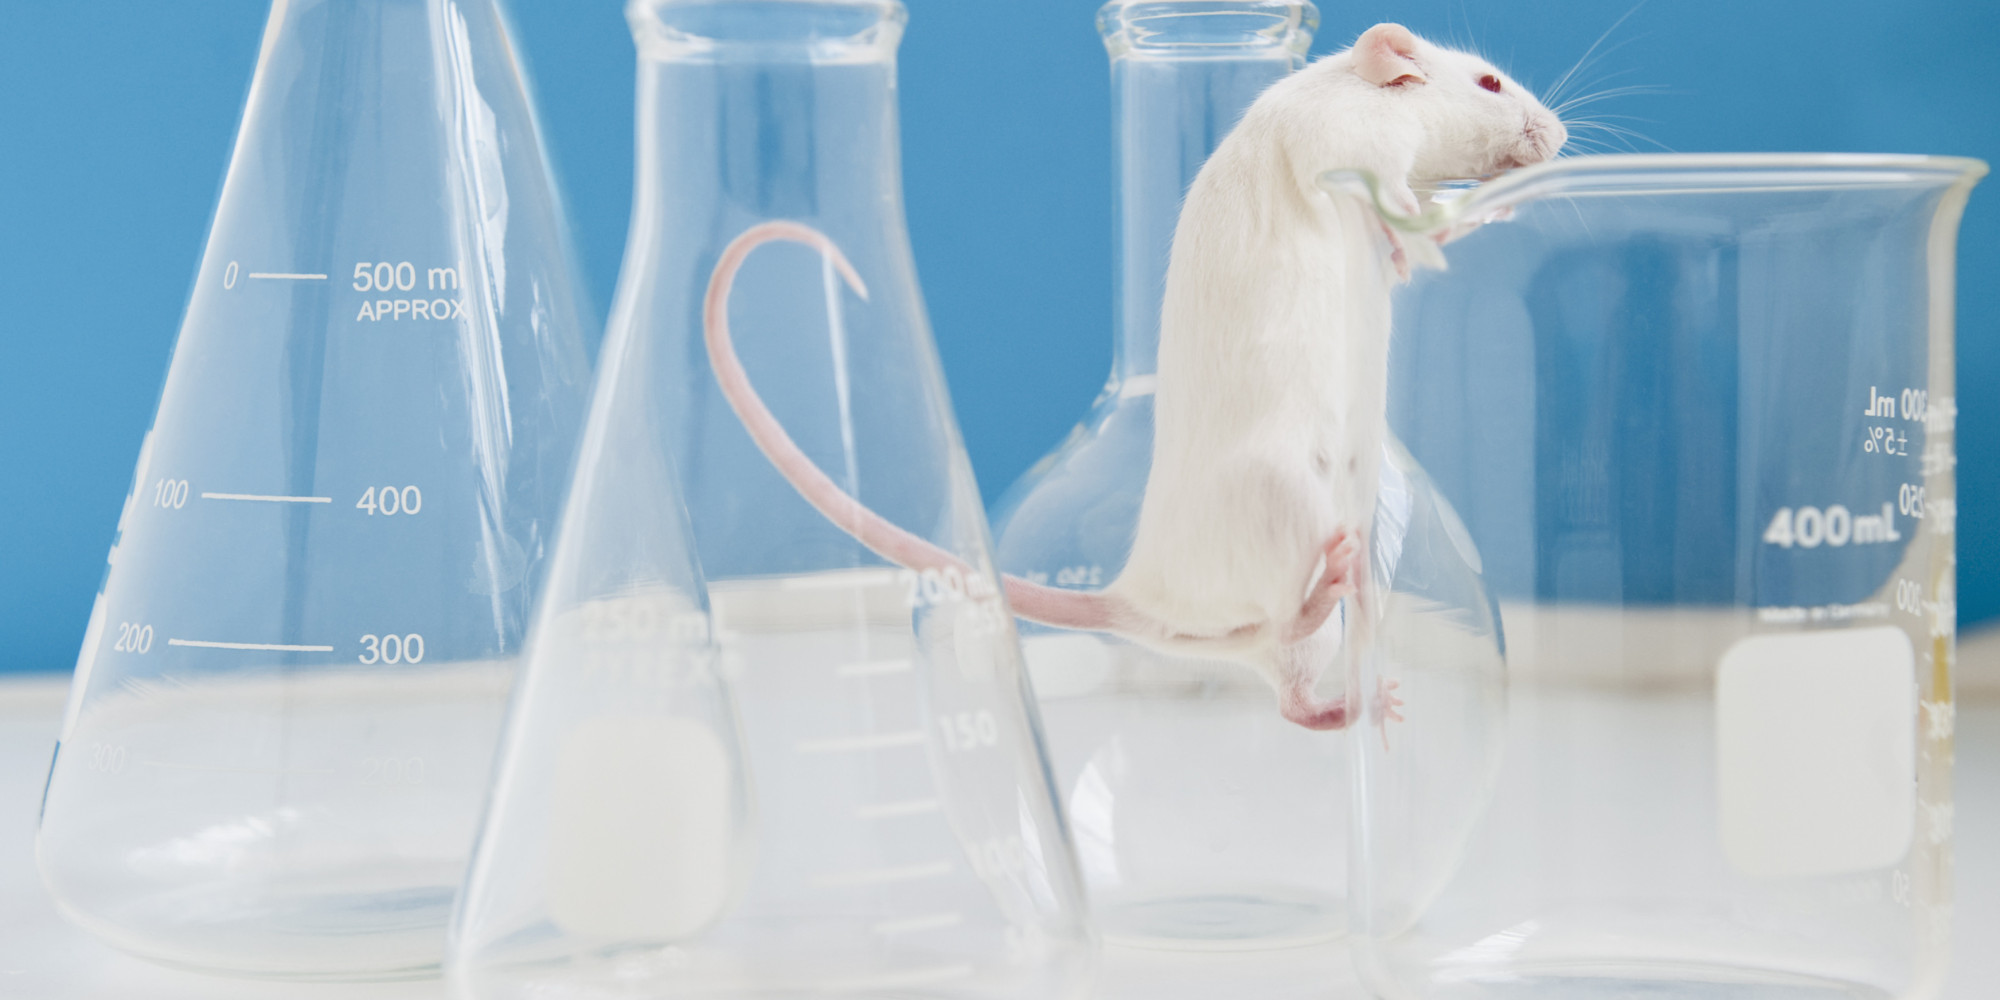 Эксперименты на животных биоэтика